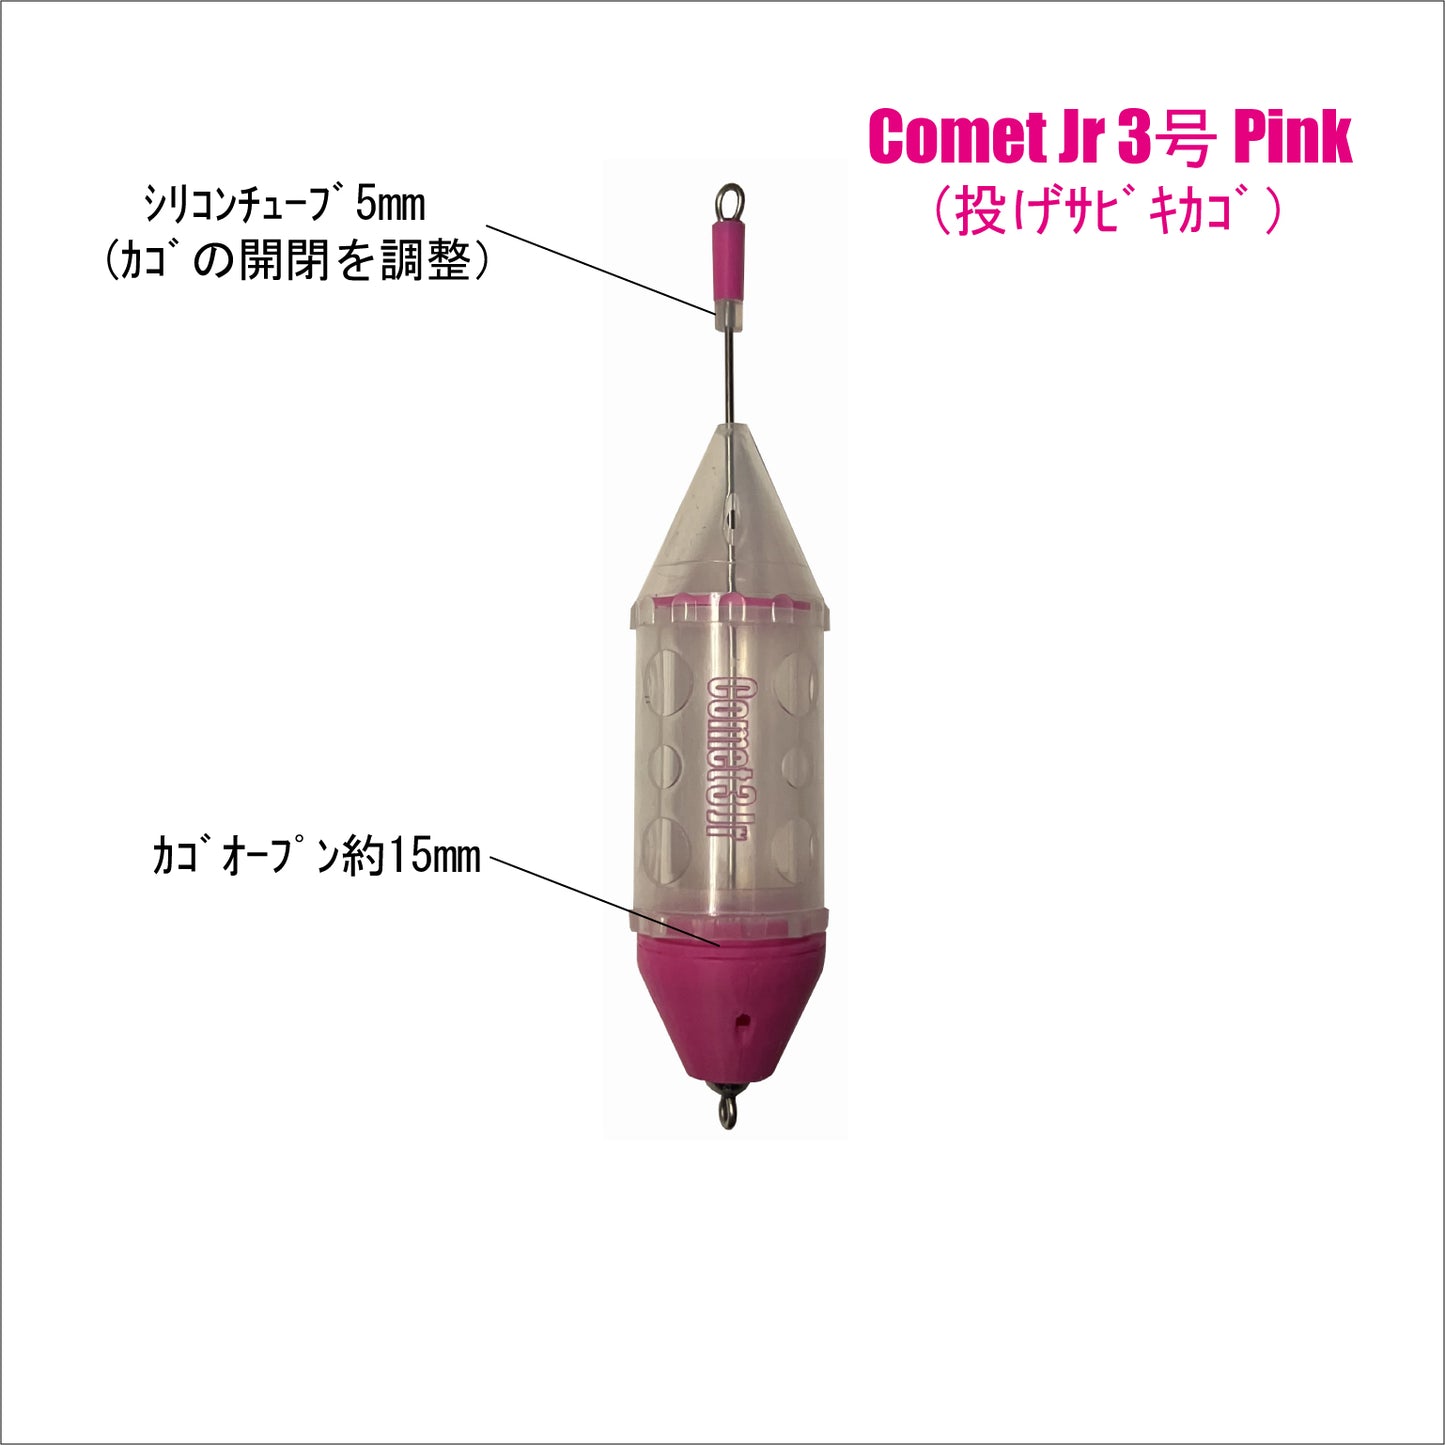 【サビキカゴ】Comet Jr